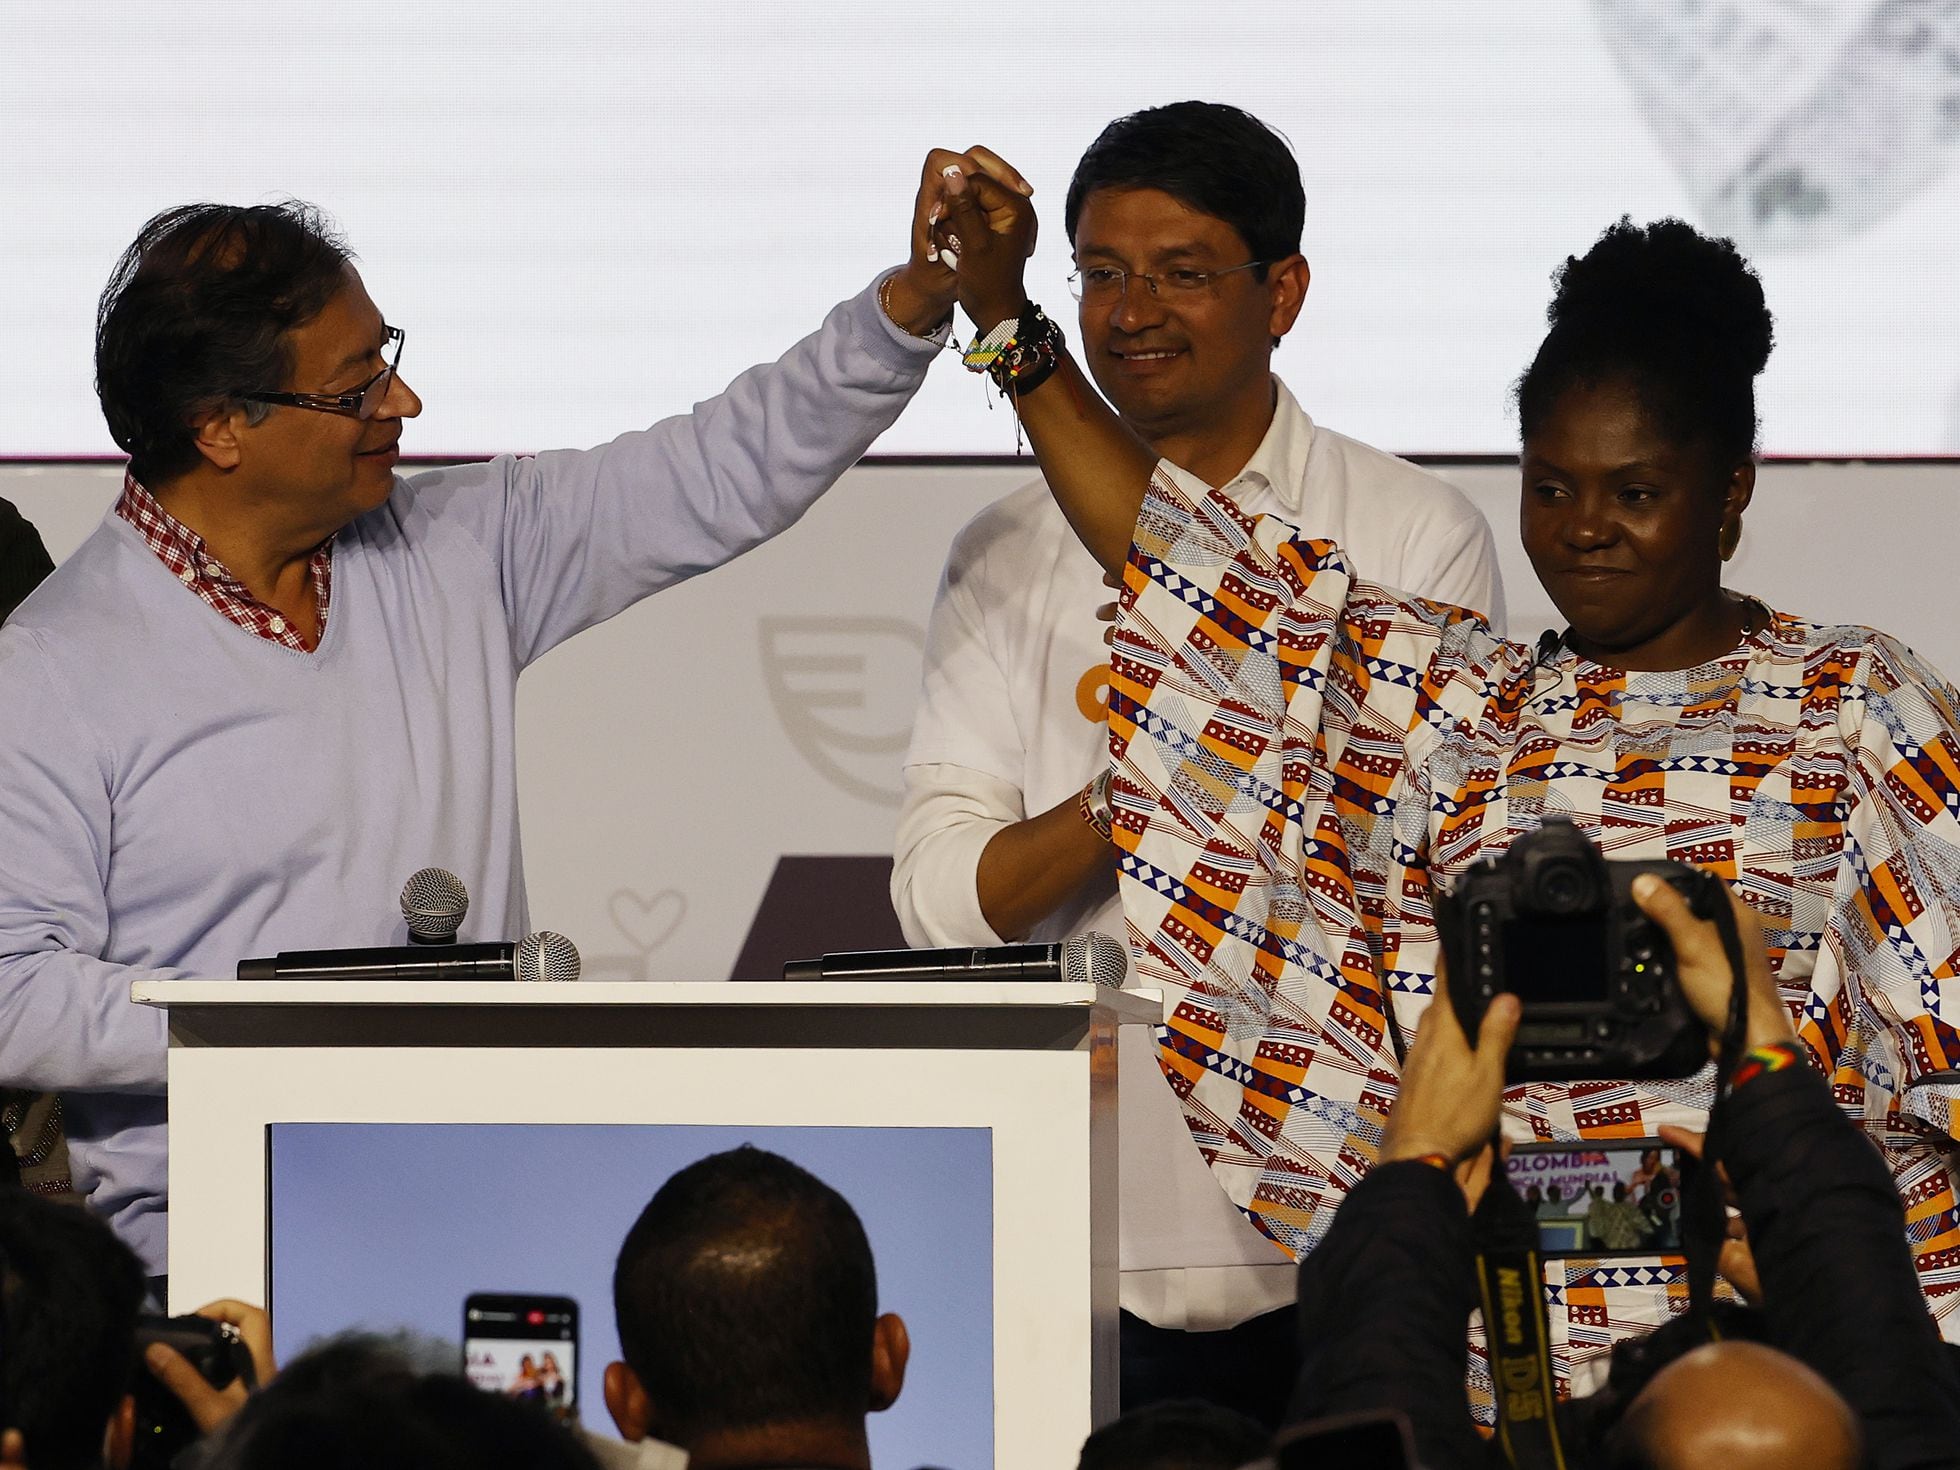 Elecciones Colombia 2022: Petro arrasa y se medirá en las presidenciales a una derecha fuerte y un centro hundido | Internacional | EL PAÍS